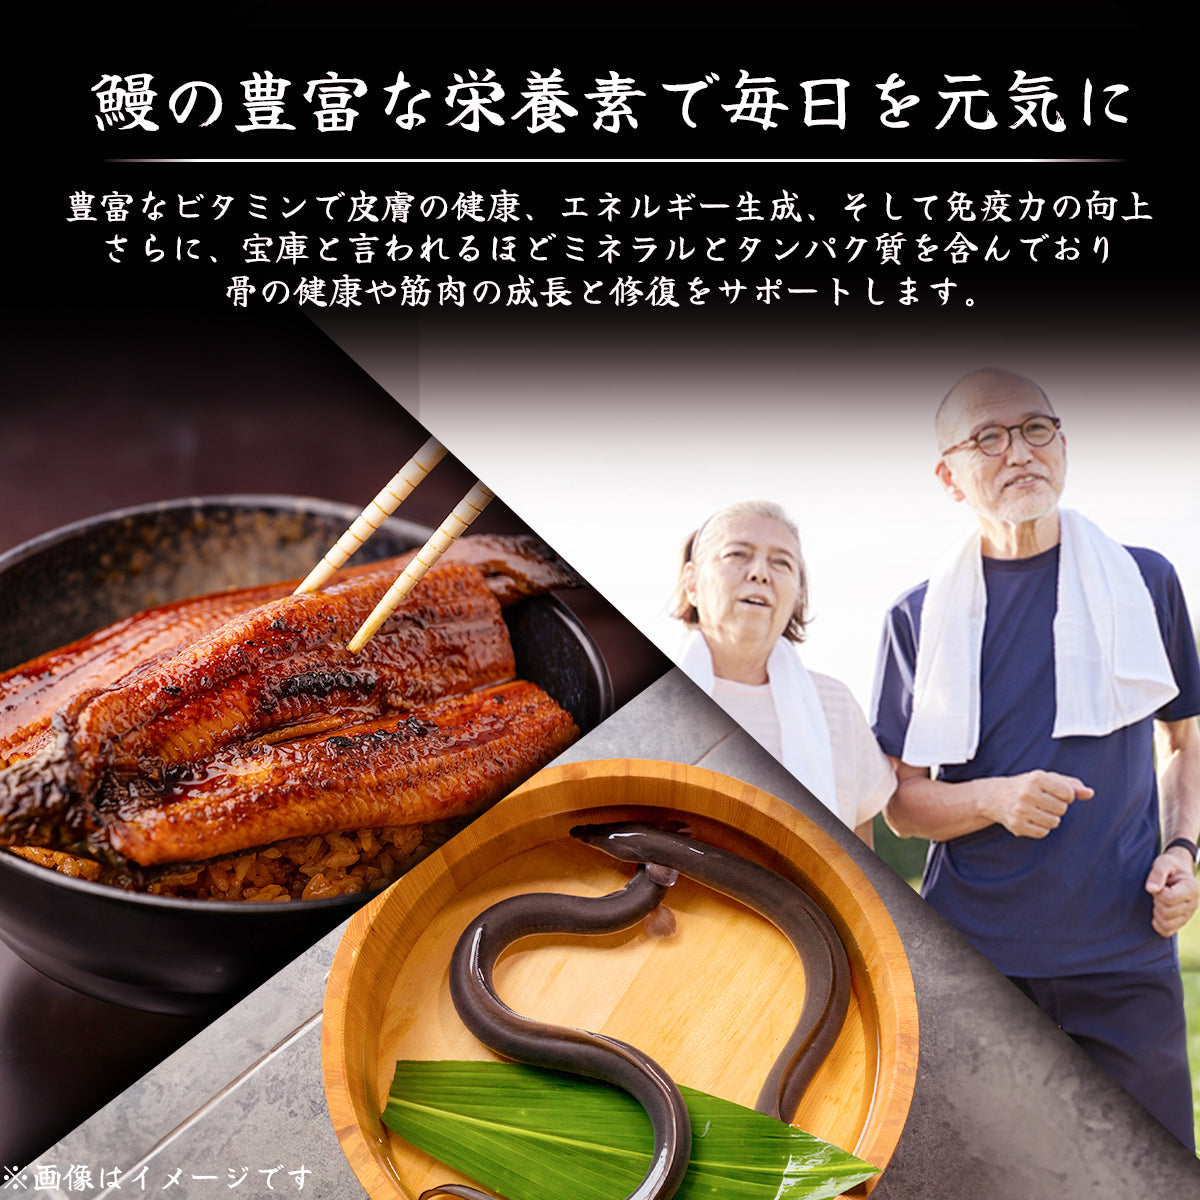 土佐黒潮水産による厳選された鰻、高知県産の鰻を使用した伝統的な蒲焼き、外は香ばしく中はふっくらとした食感が特徴